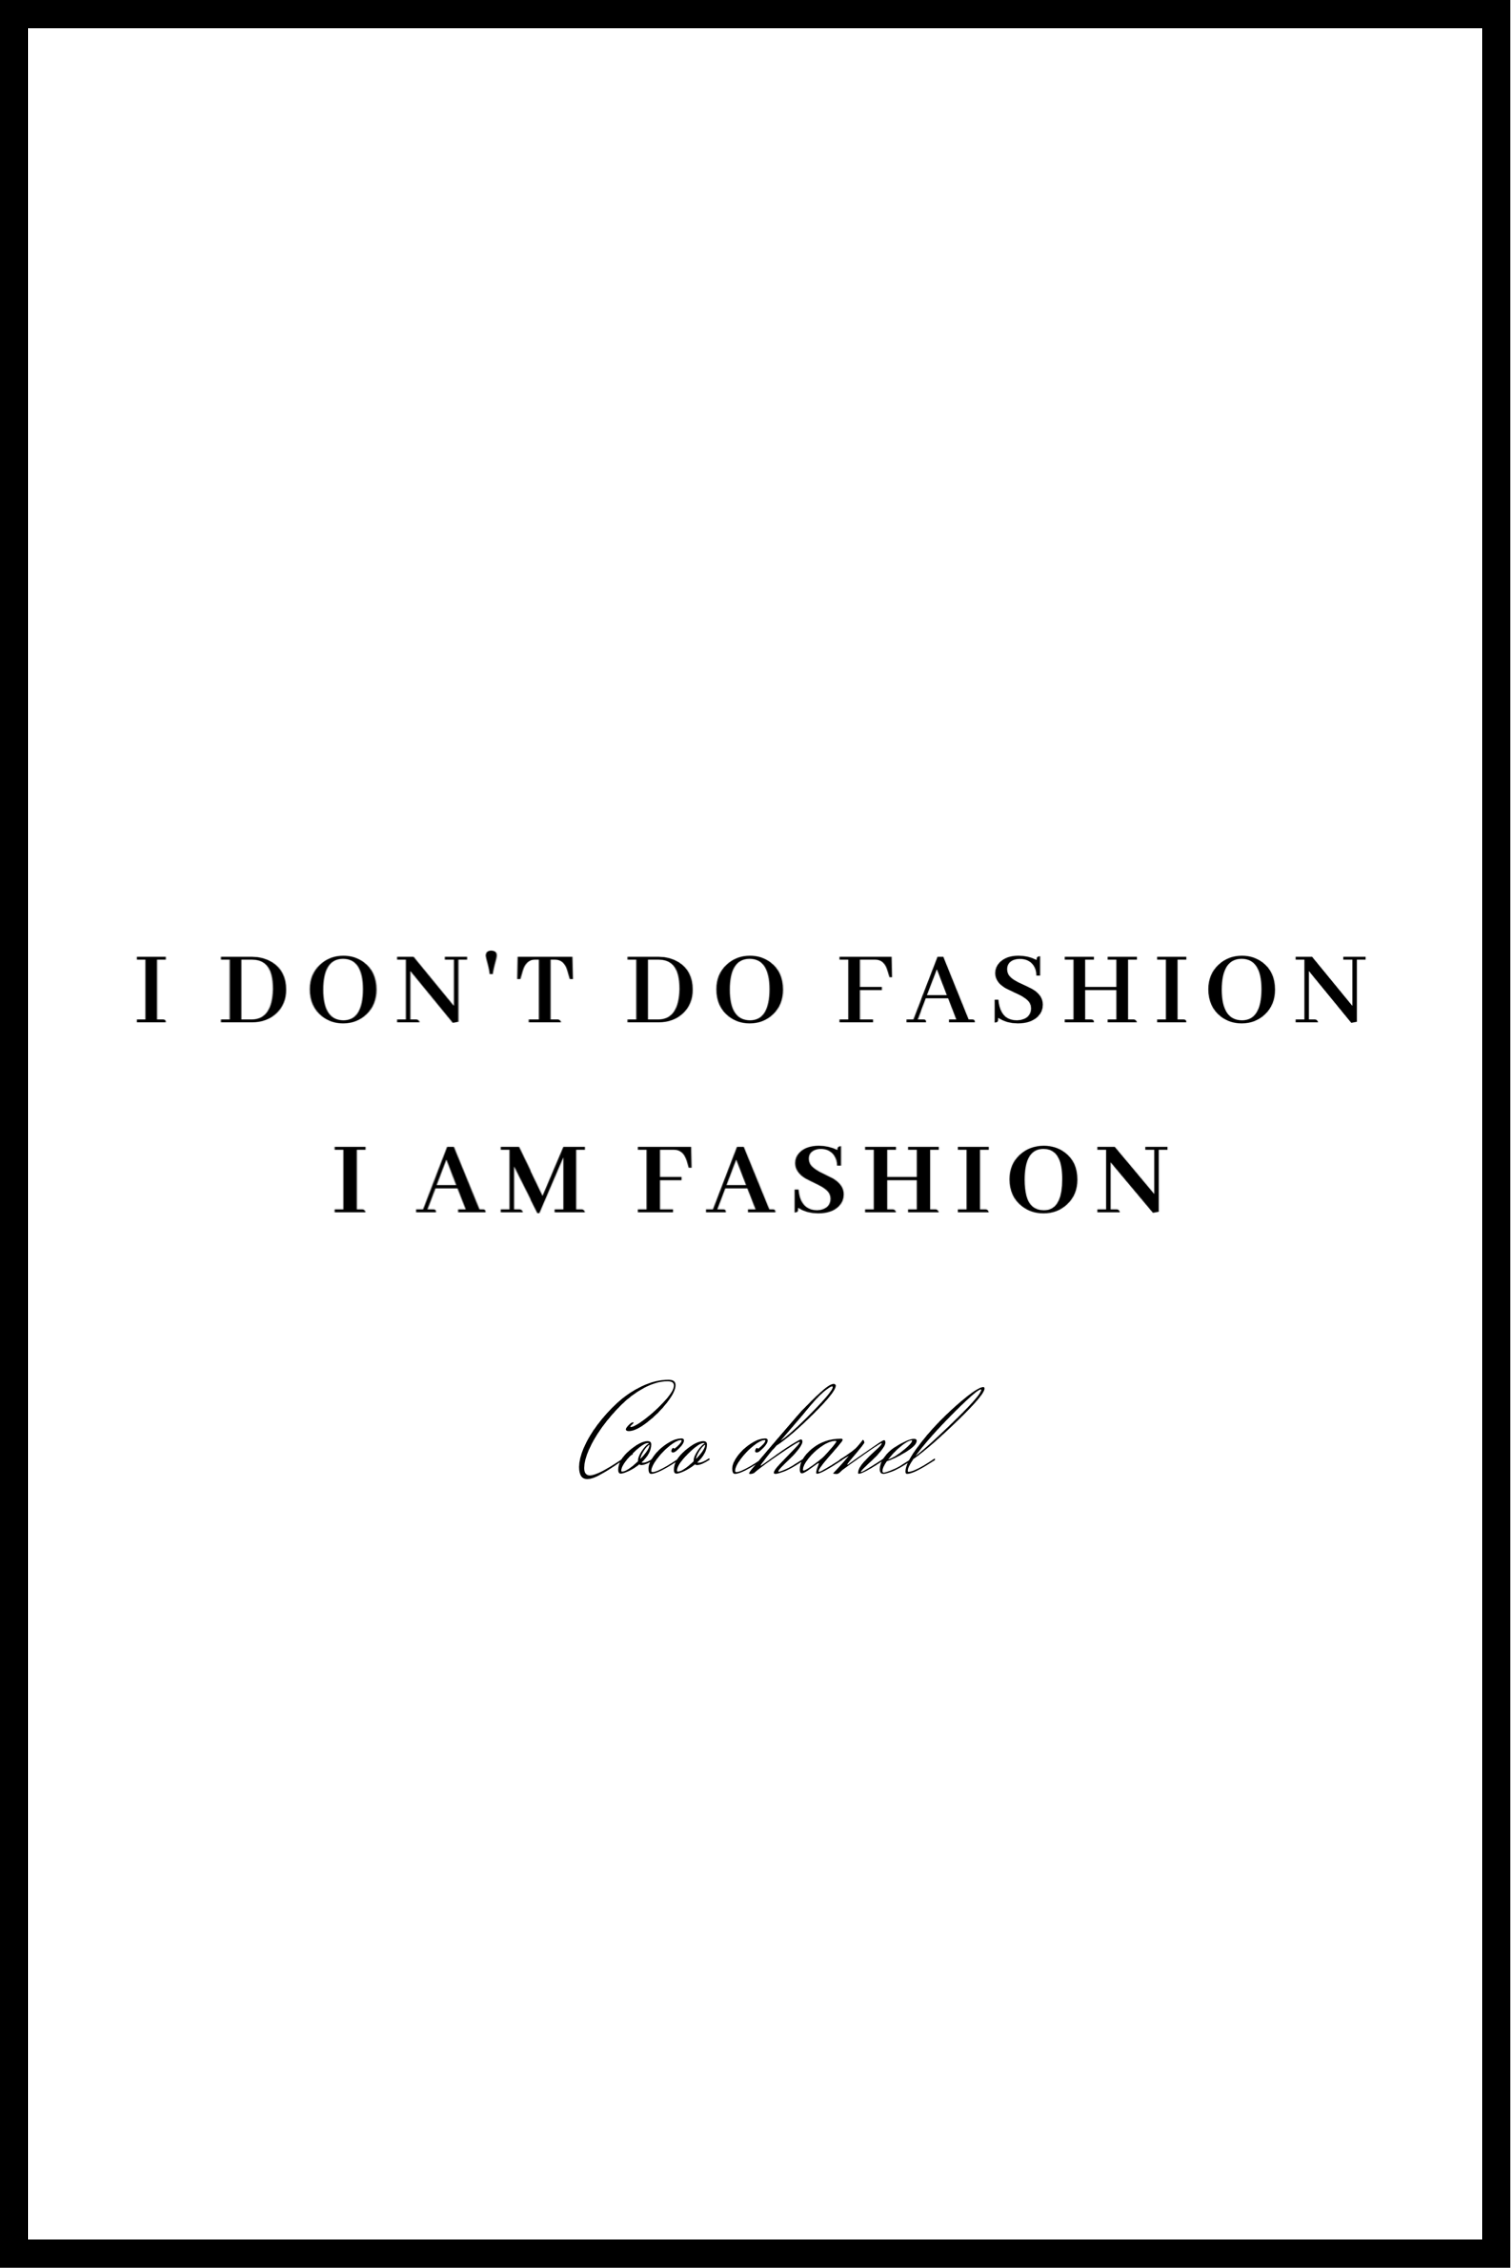 I AM Fashion plakat